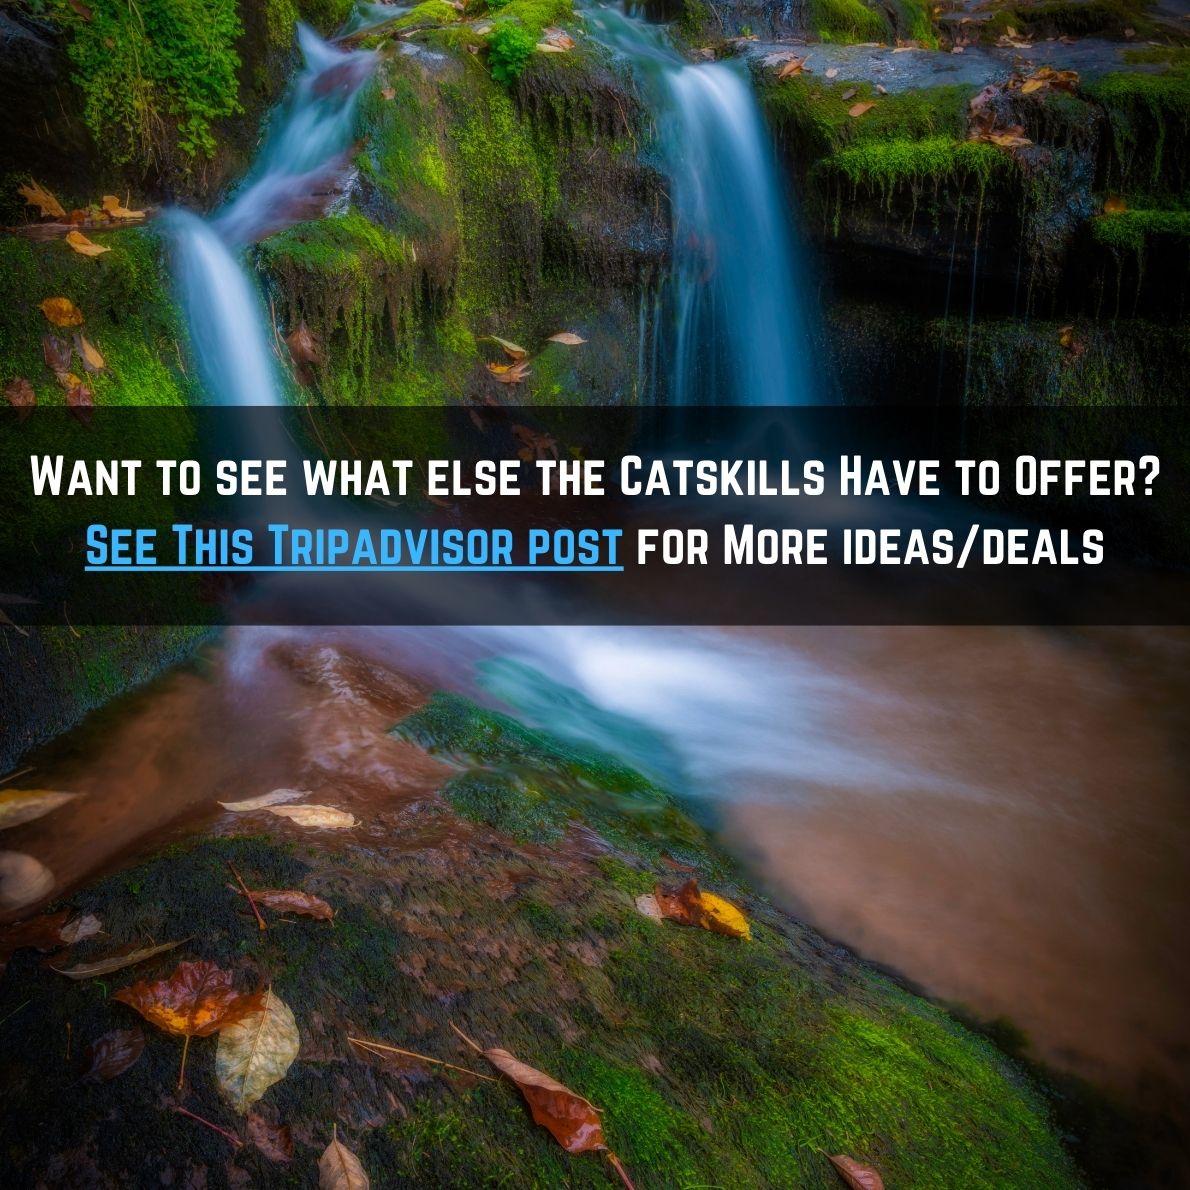 catskill waterfalls tripadvisor post and ideas 04